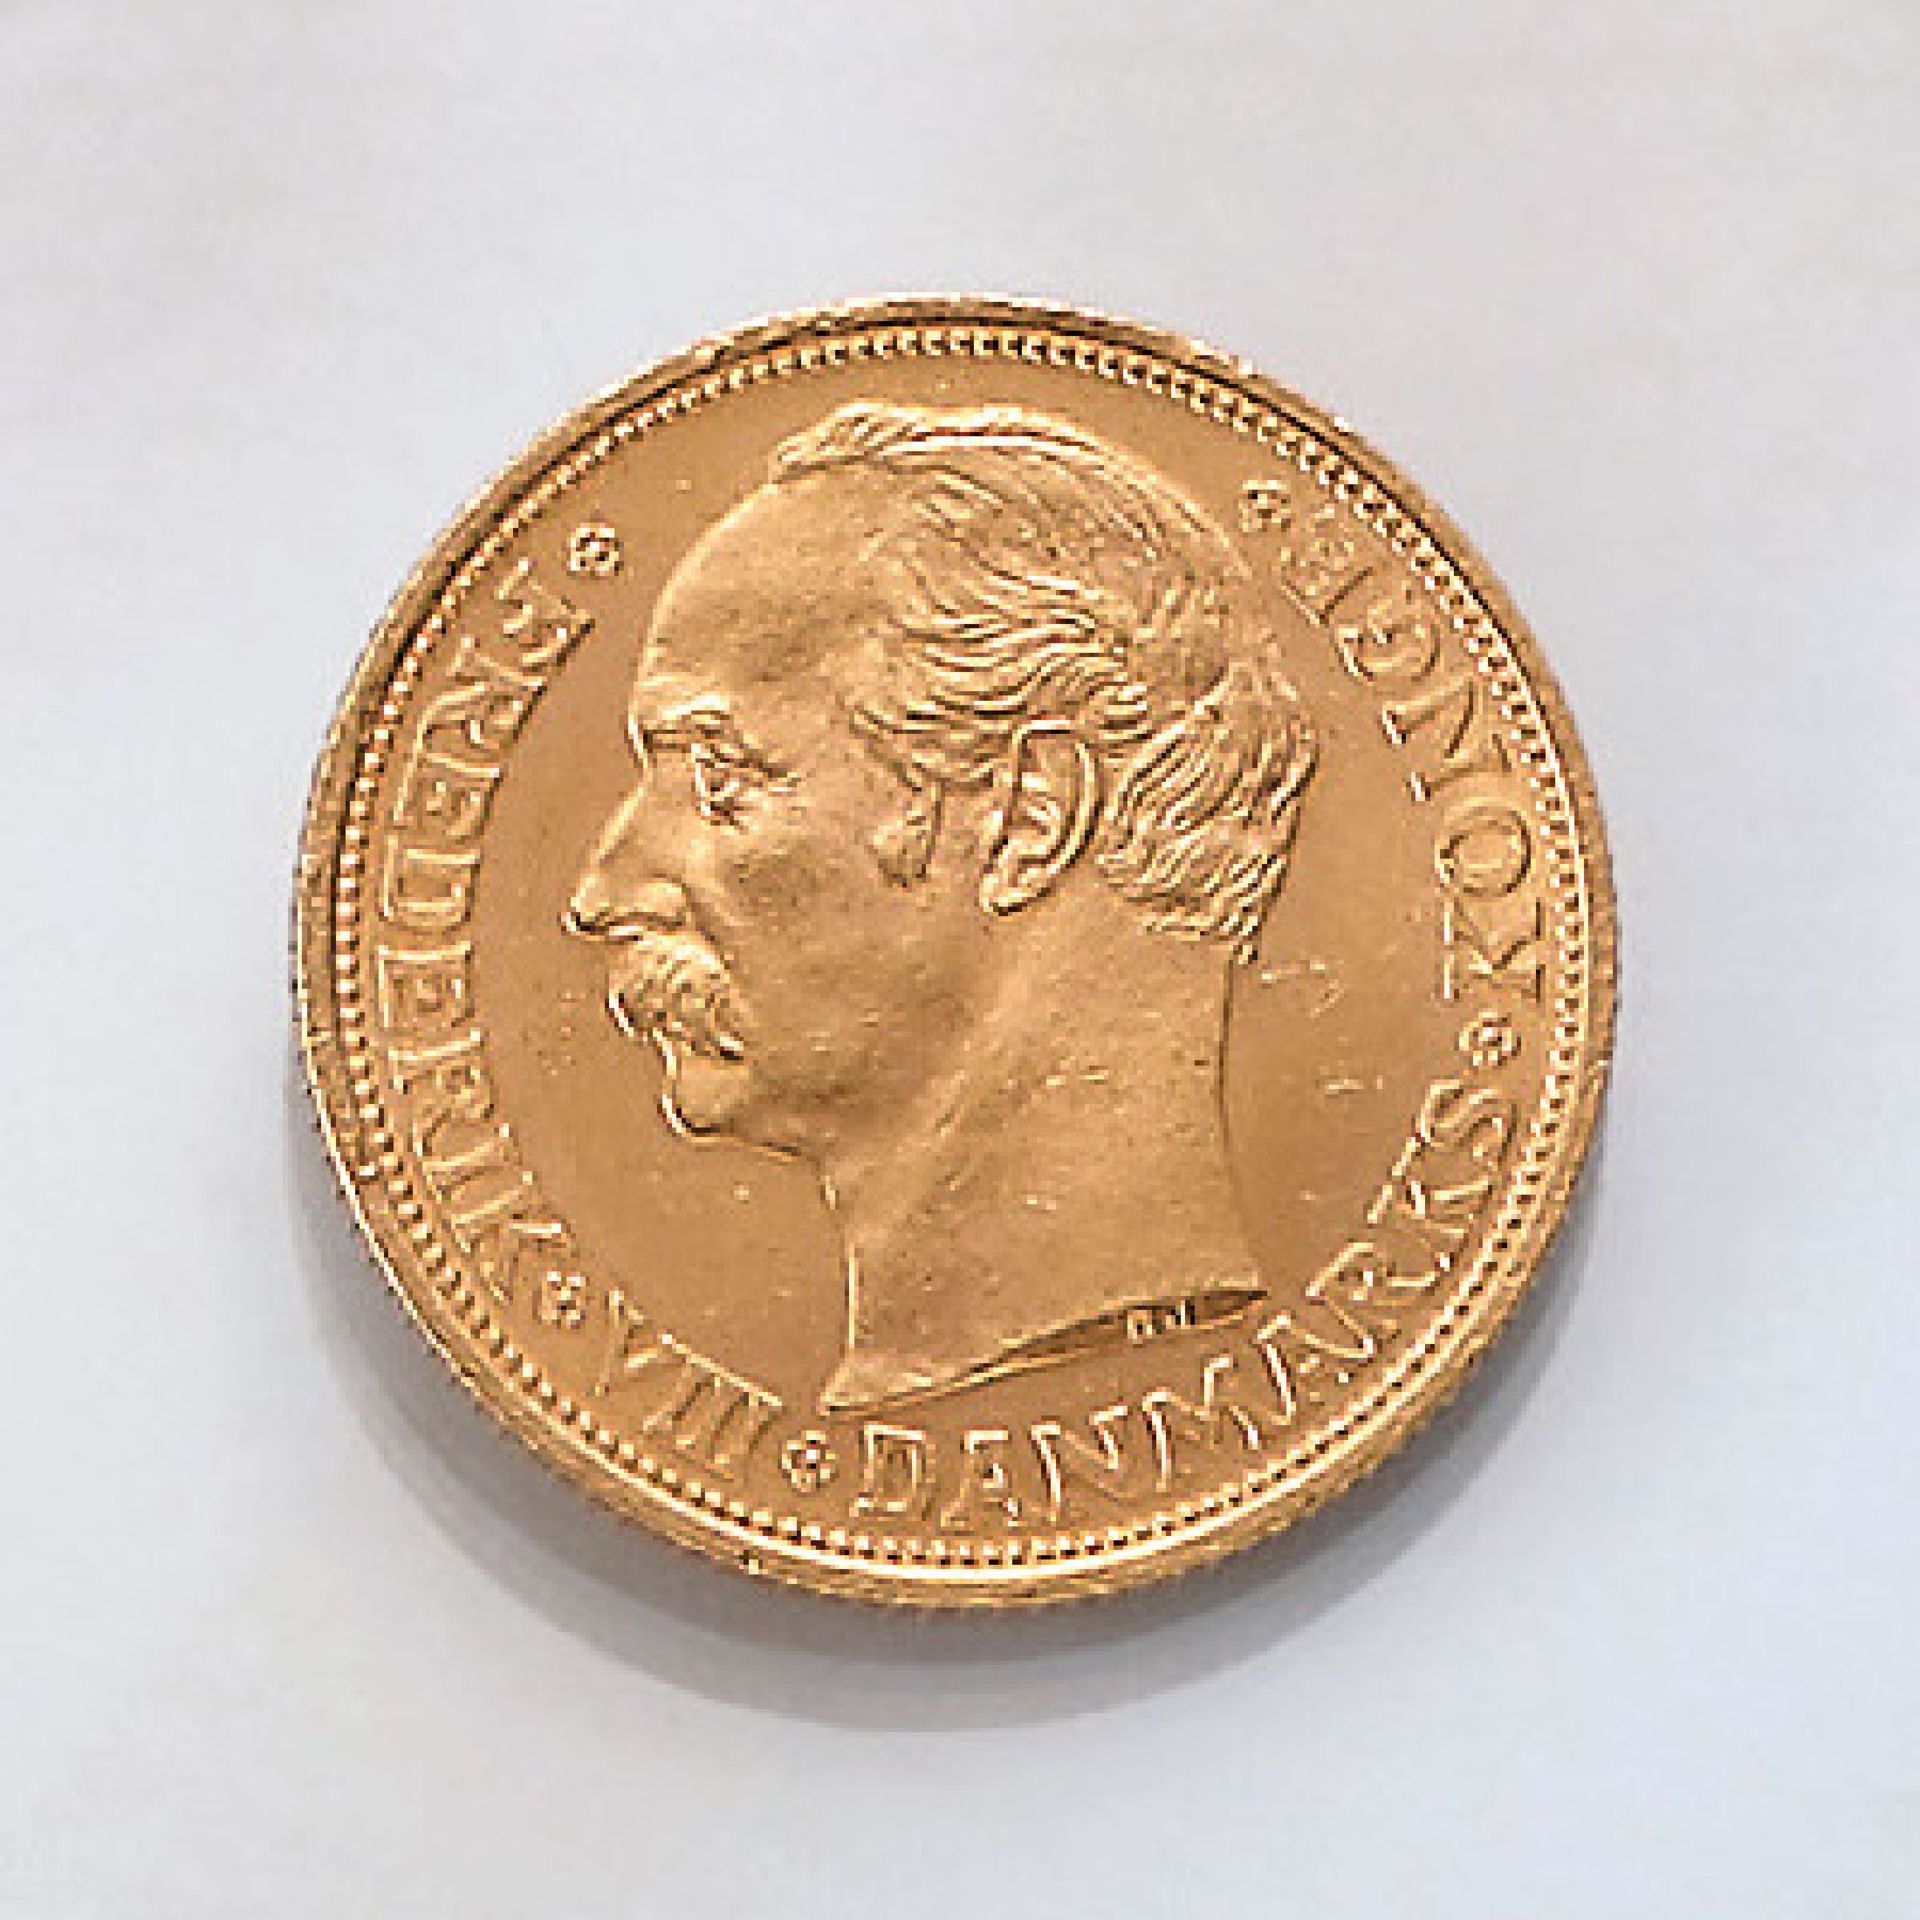 Gold coin, 20 kroner, Denmark, 1910 , Frederik VIII., Danmarks Konge